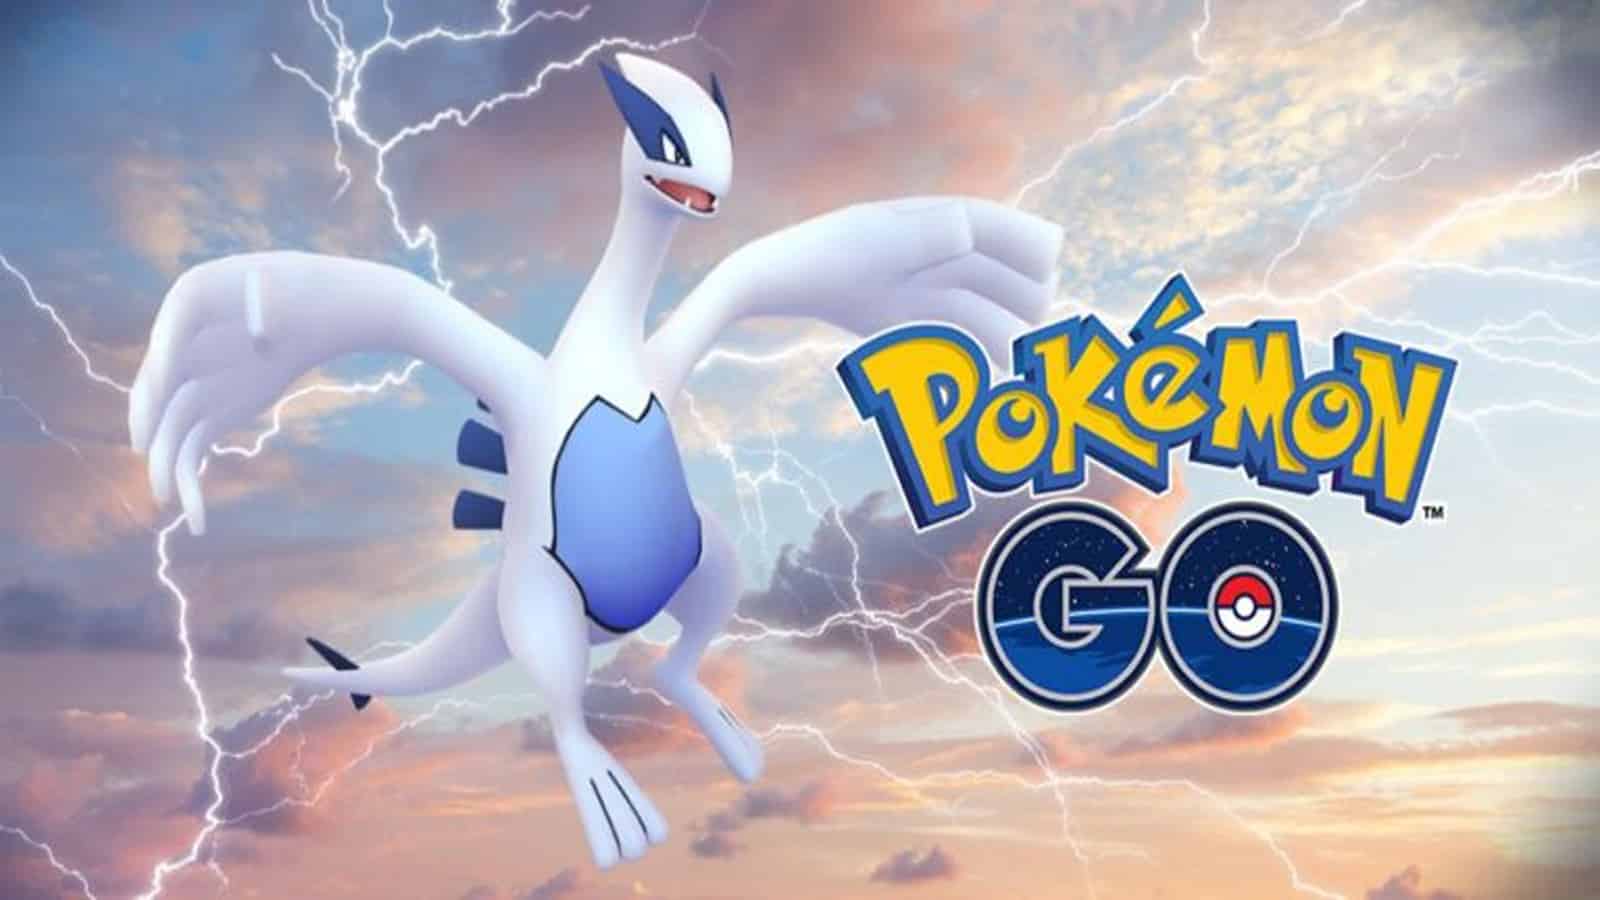 Pokémon GO : Comment attraper et vaincre Reshiram (Shiny)